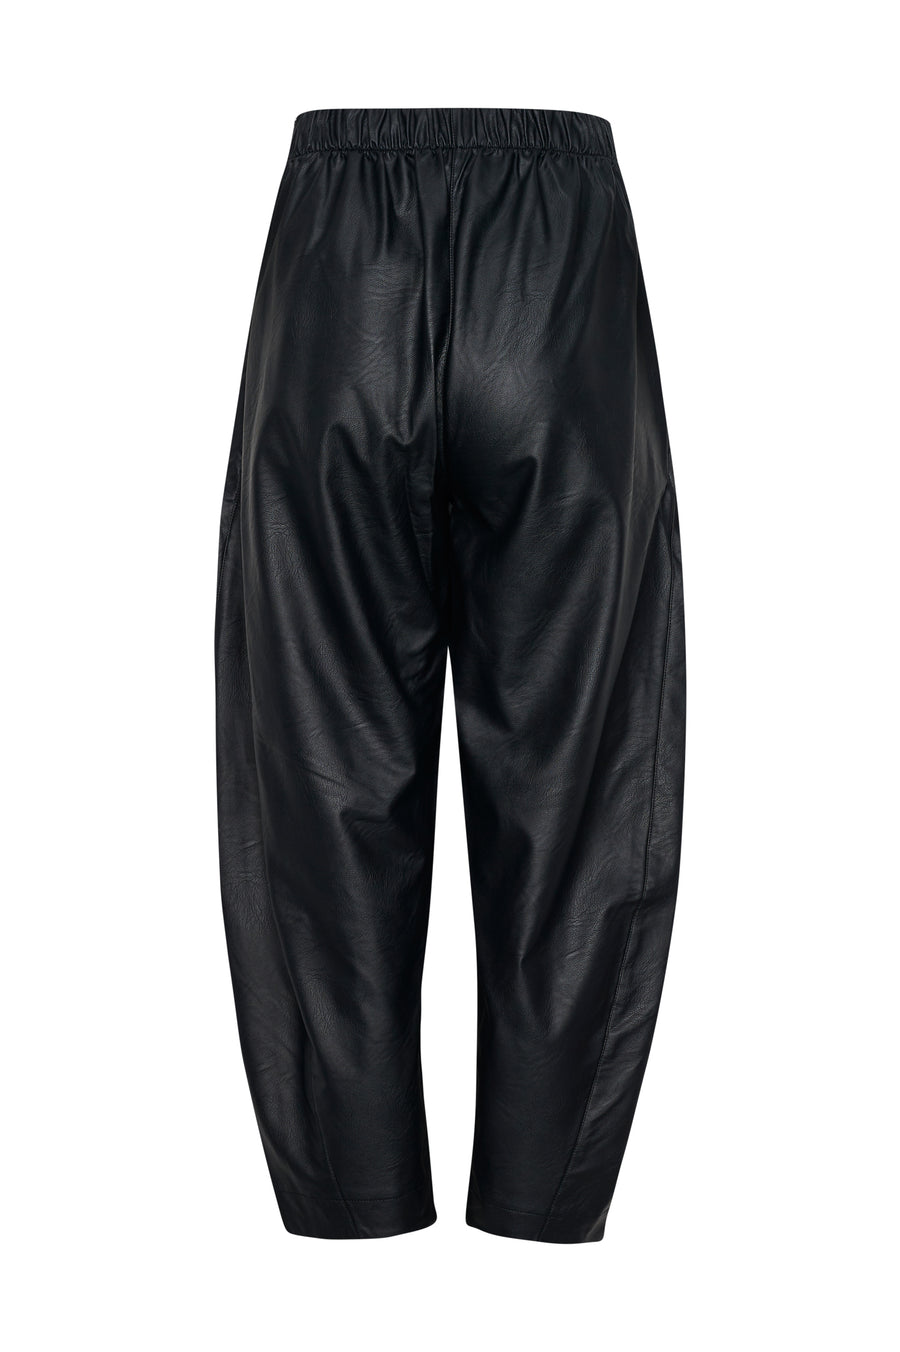 Bologna Pants (Black)